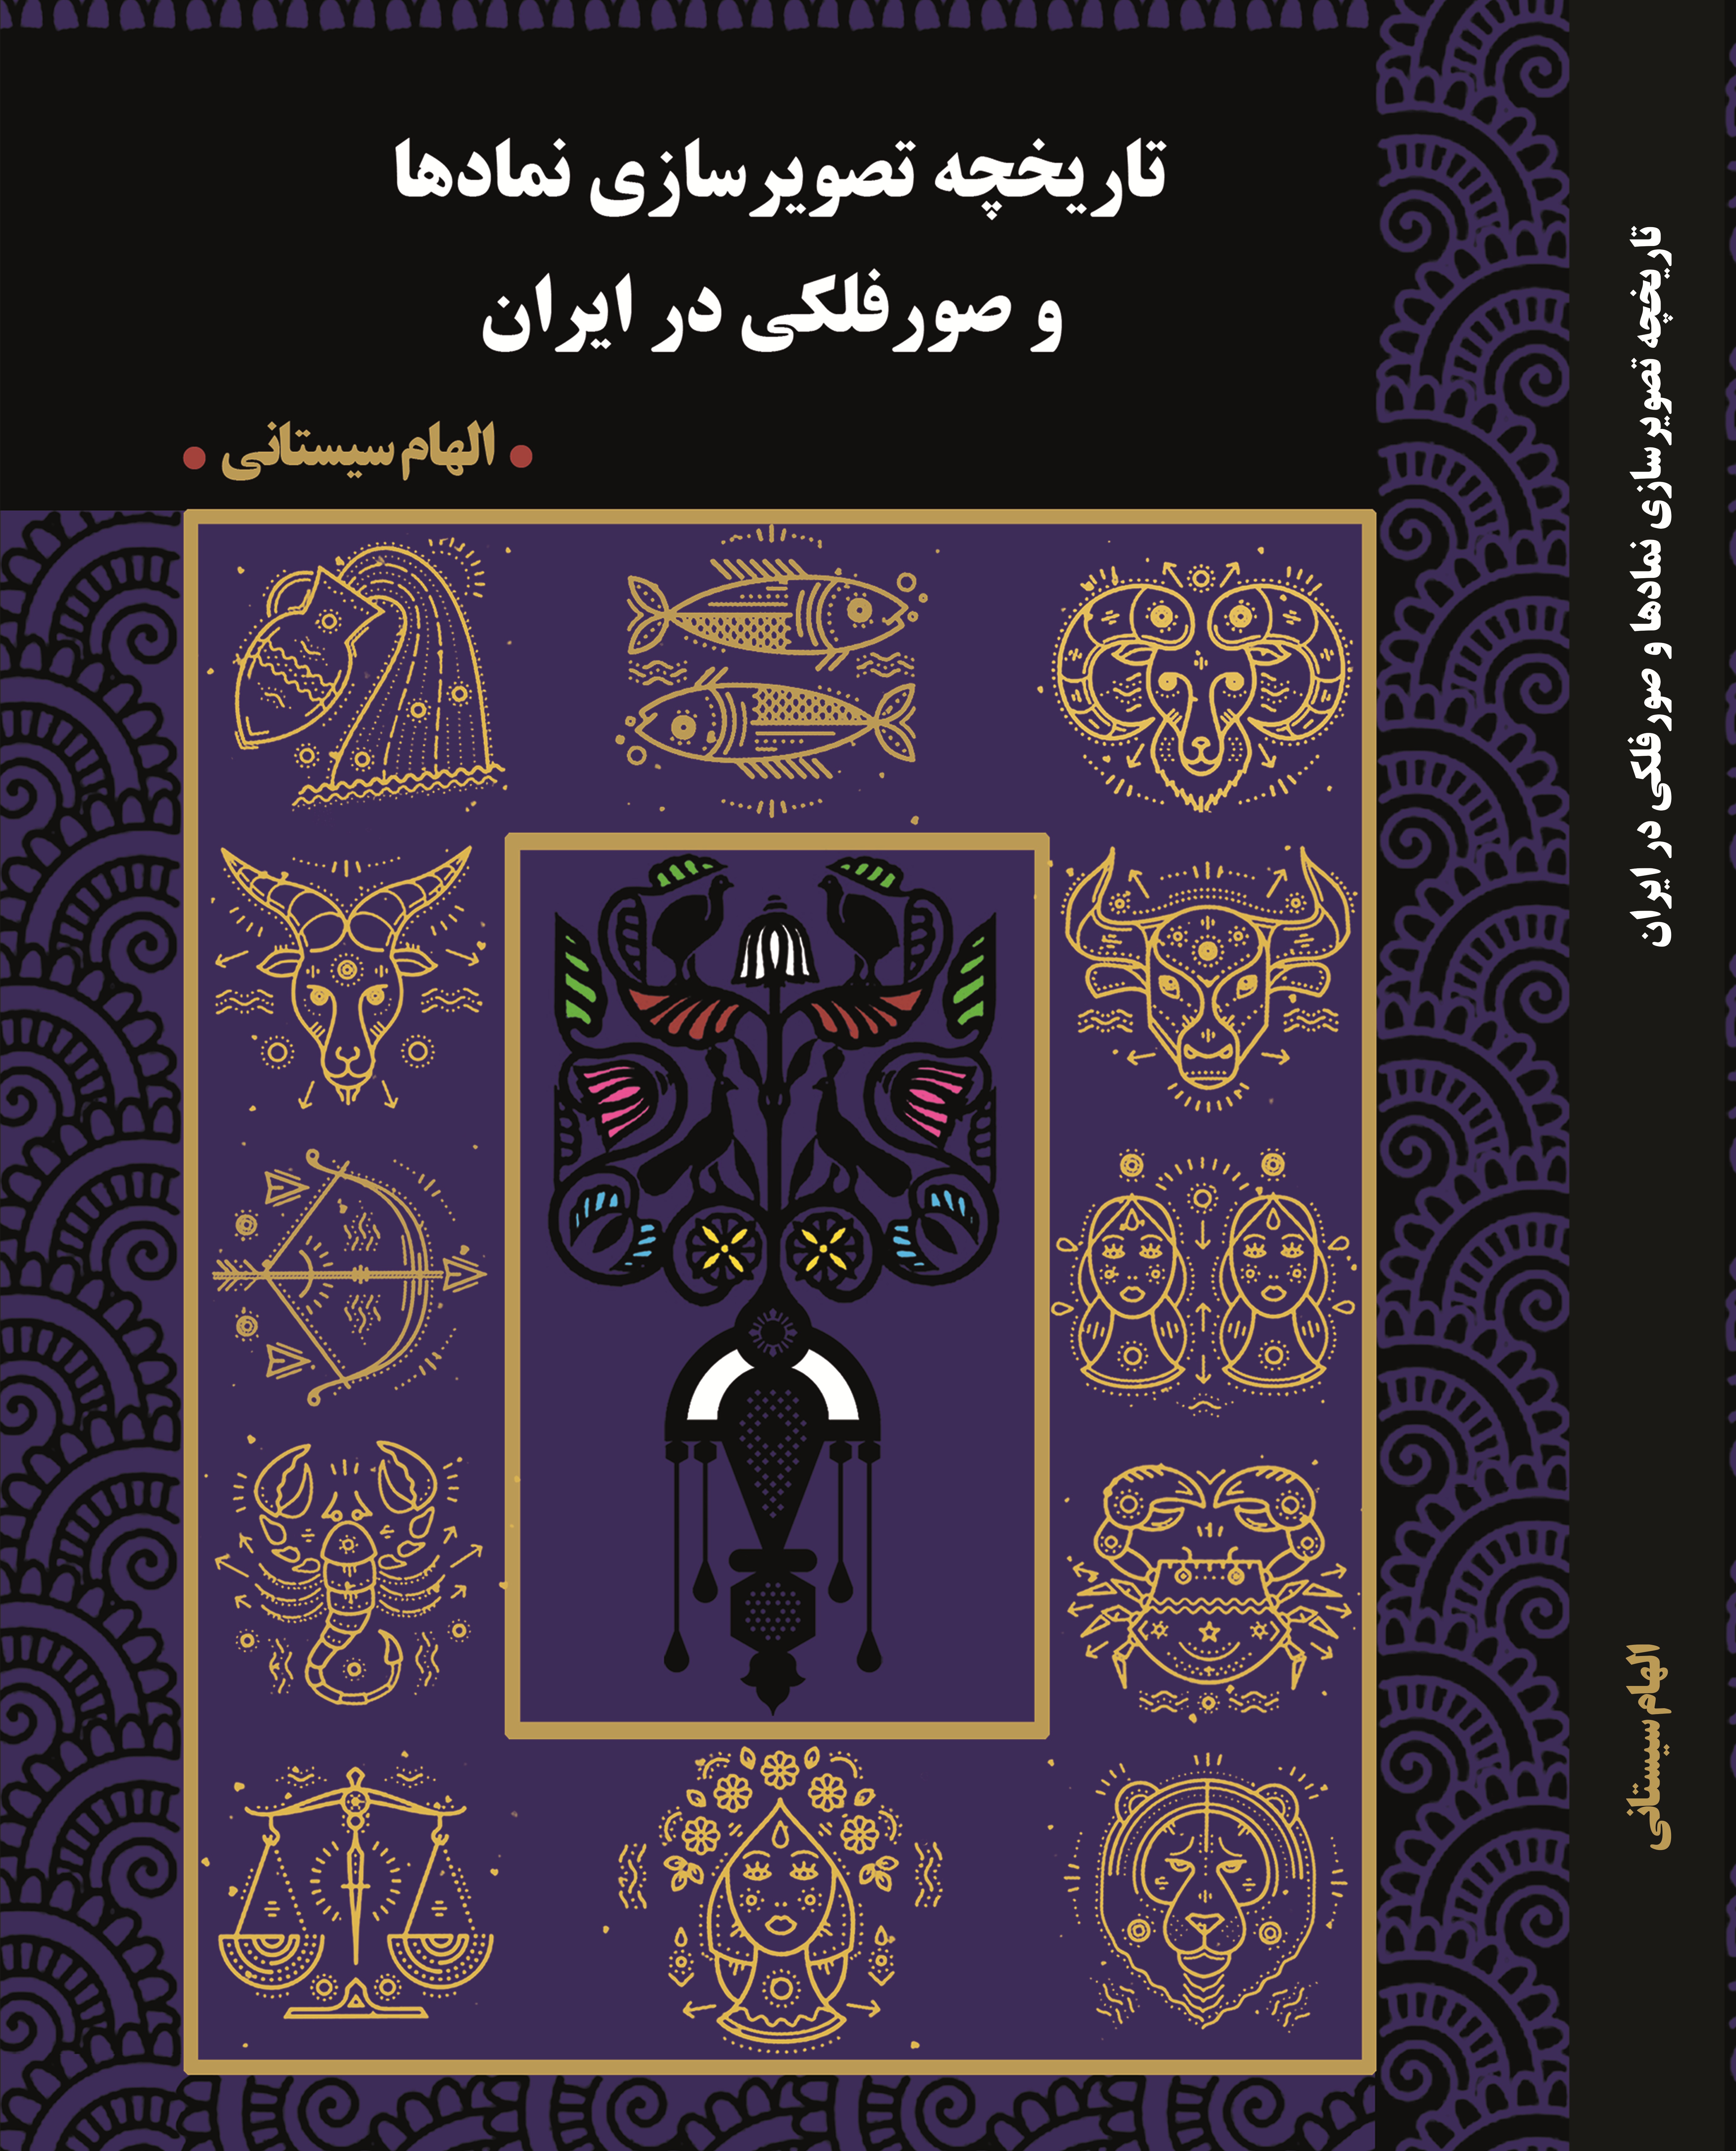 تاریخچه تصویر سازی نمادها و صور فلکی در ایران